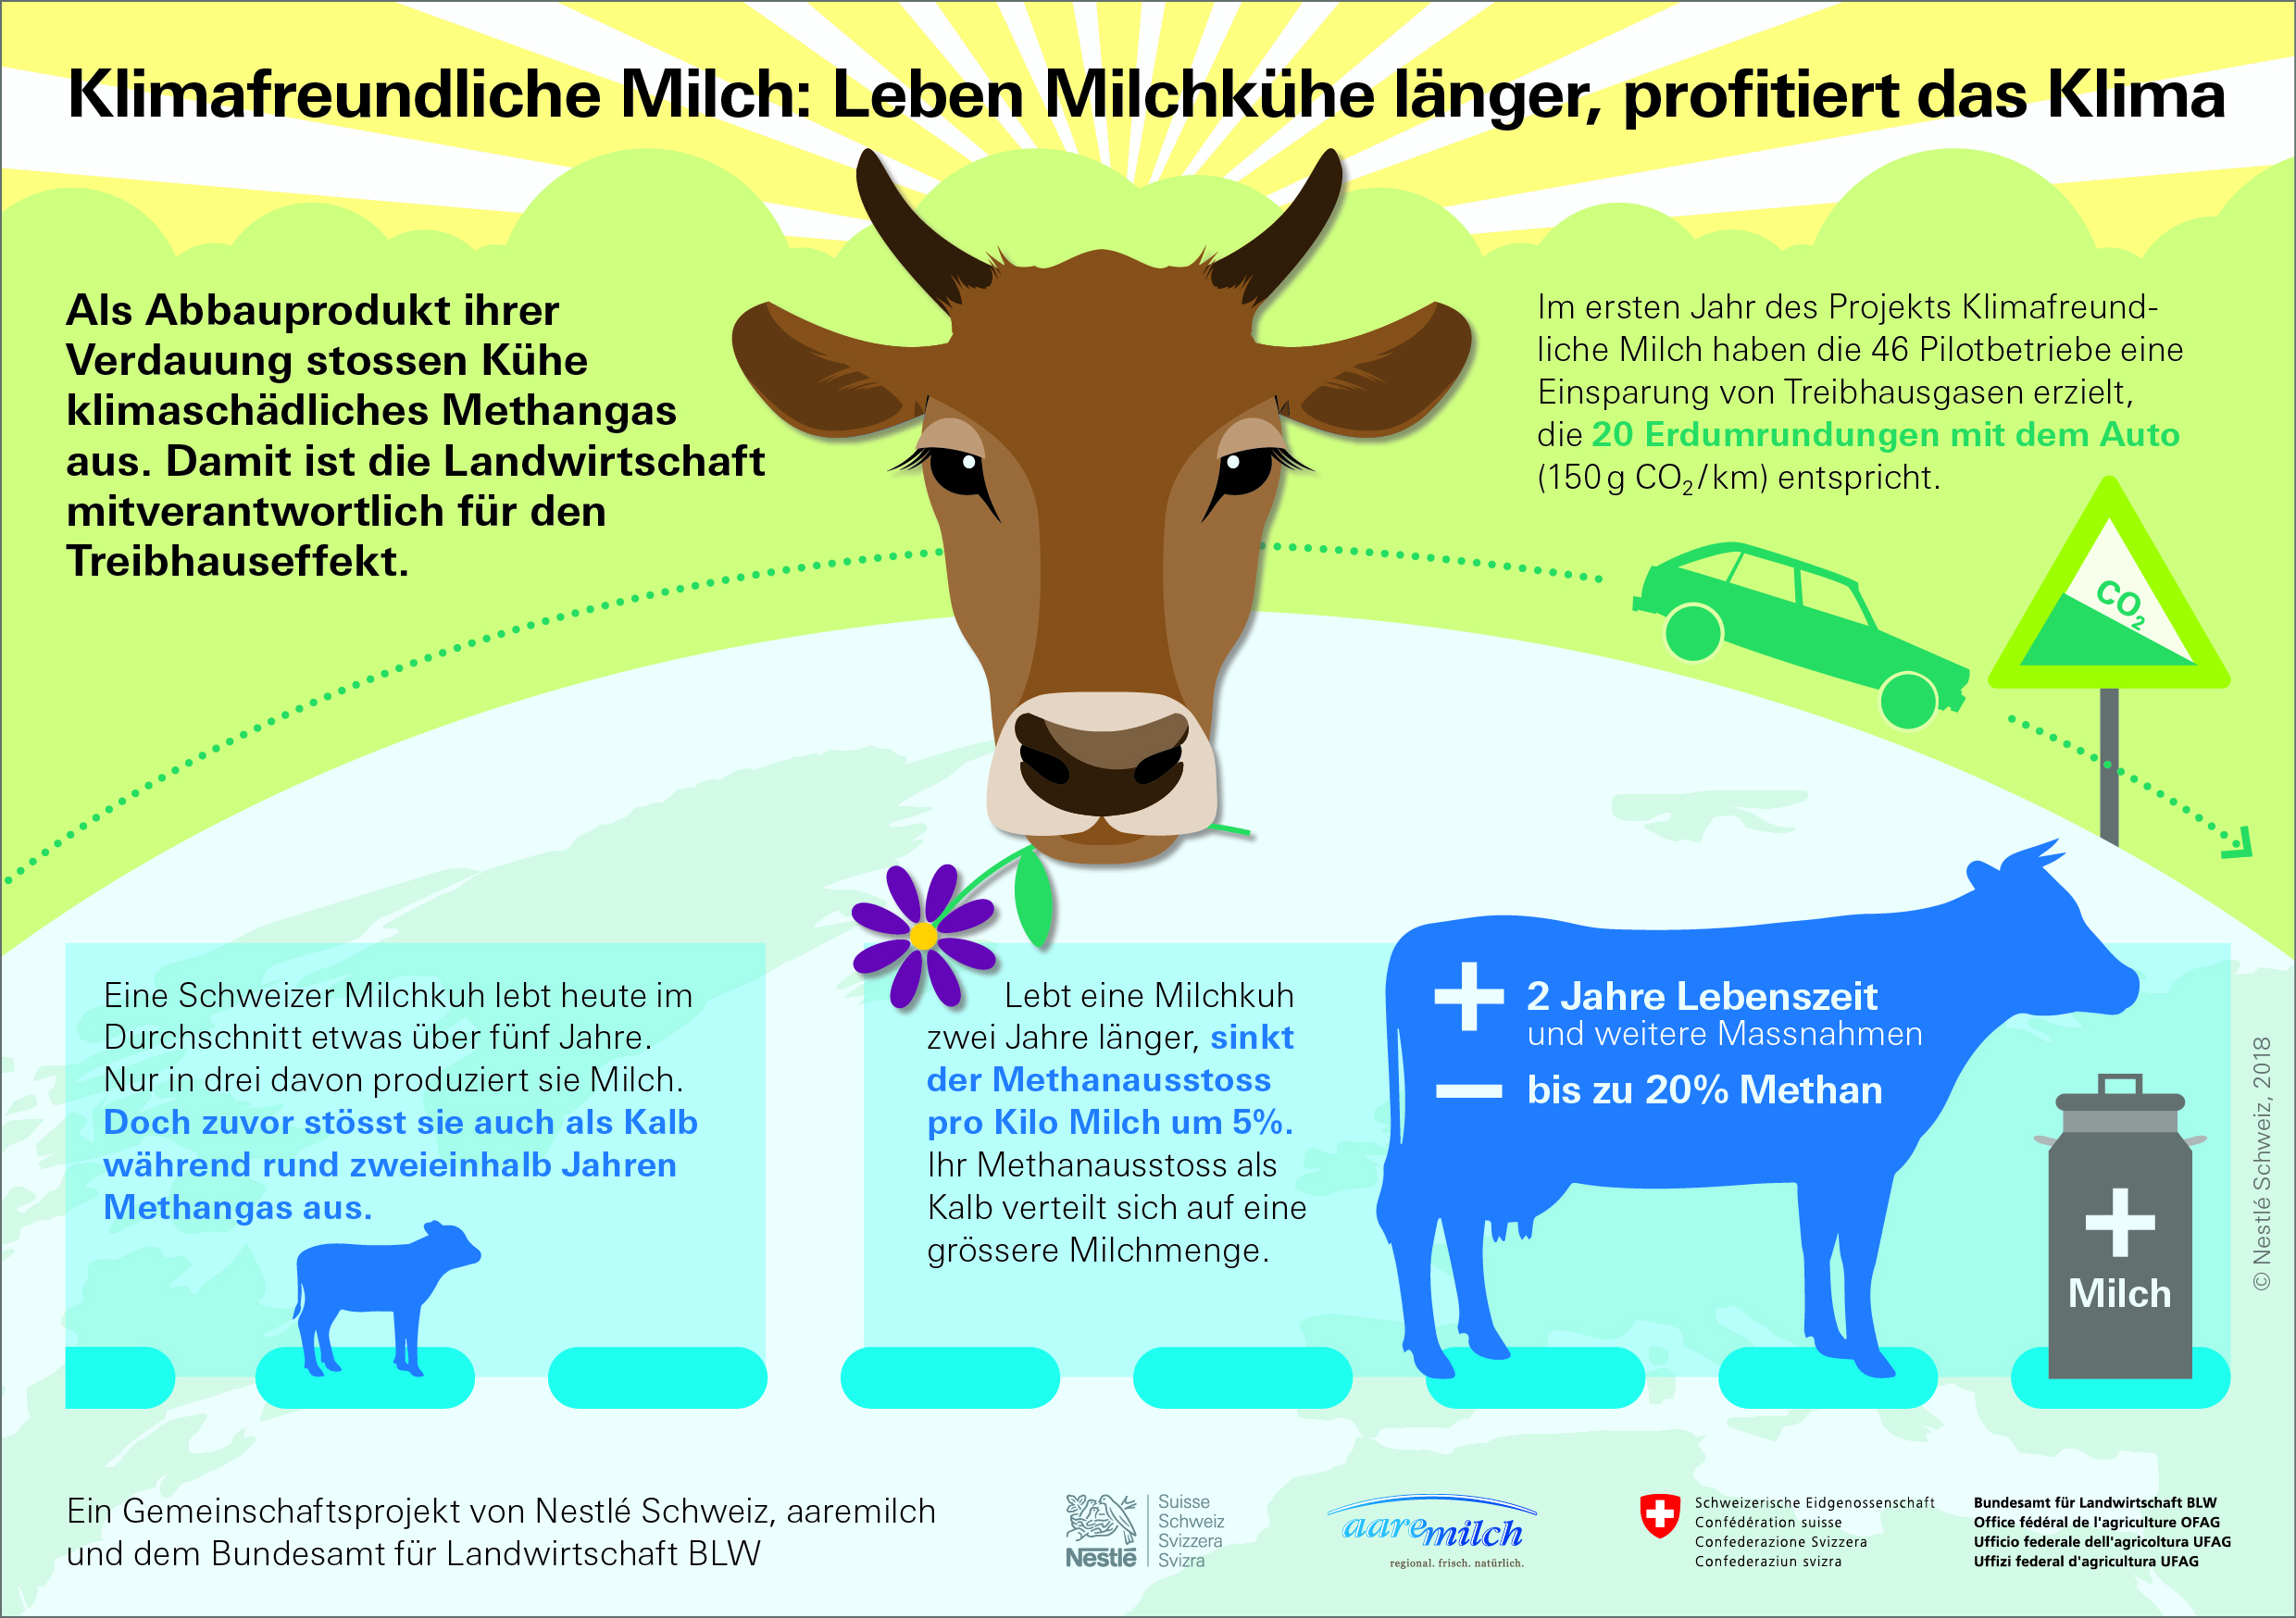 Klimafreundliche Milch: mit älteren Kühen das Klima schonen